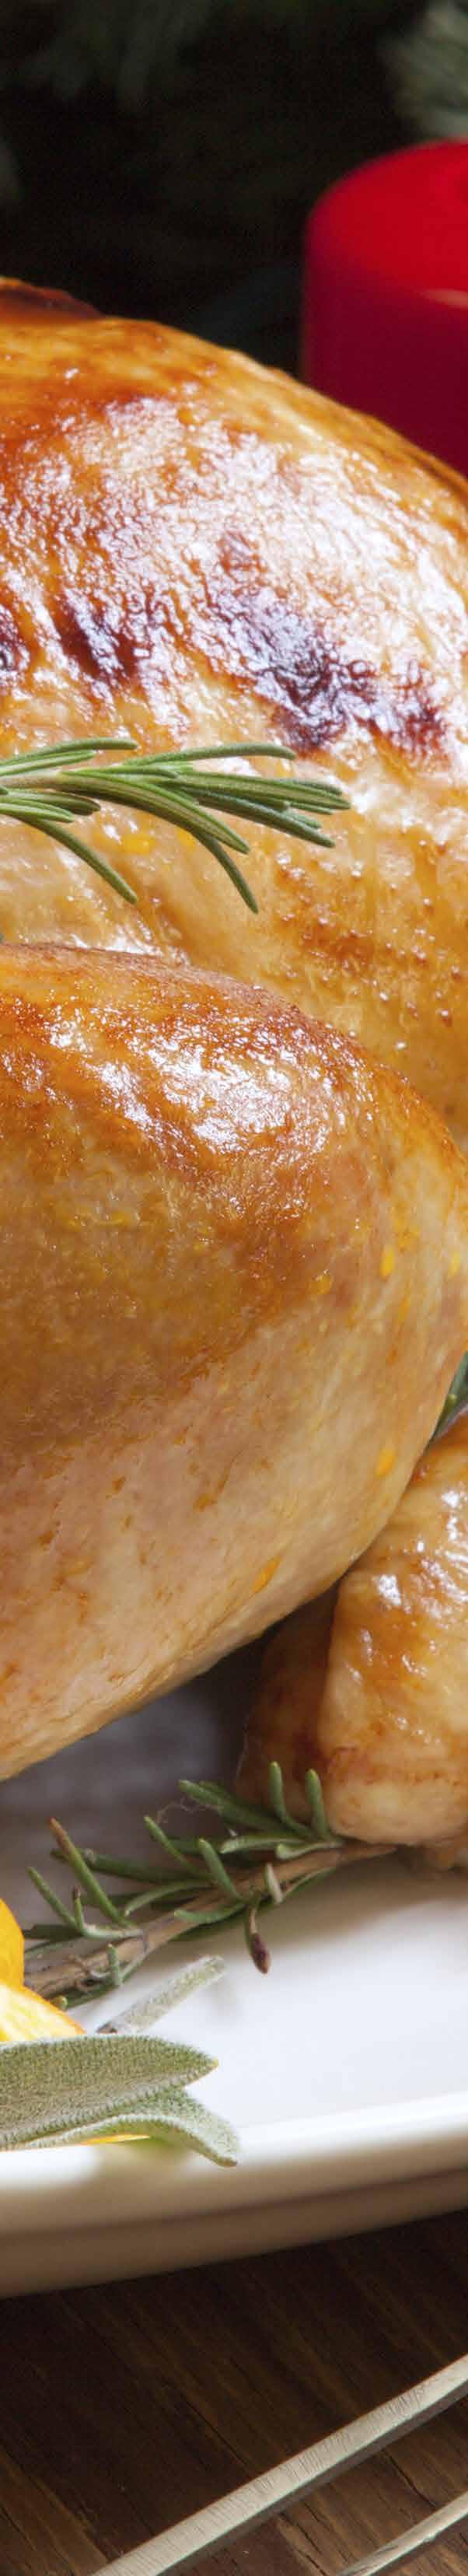 Bufet Classic 980CZK COLD BUFFET / STUDENÁ KUCHYNĚ Vánoční plněné kuře s mandlemi a kachními játry Christmas stuffed chicken with almonds and foie gras Francouzské kachní rillette s želé z červené